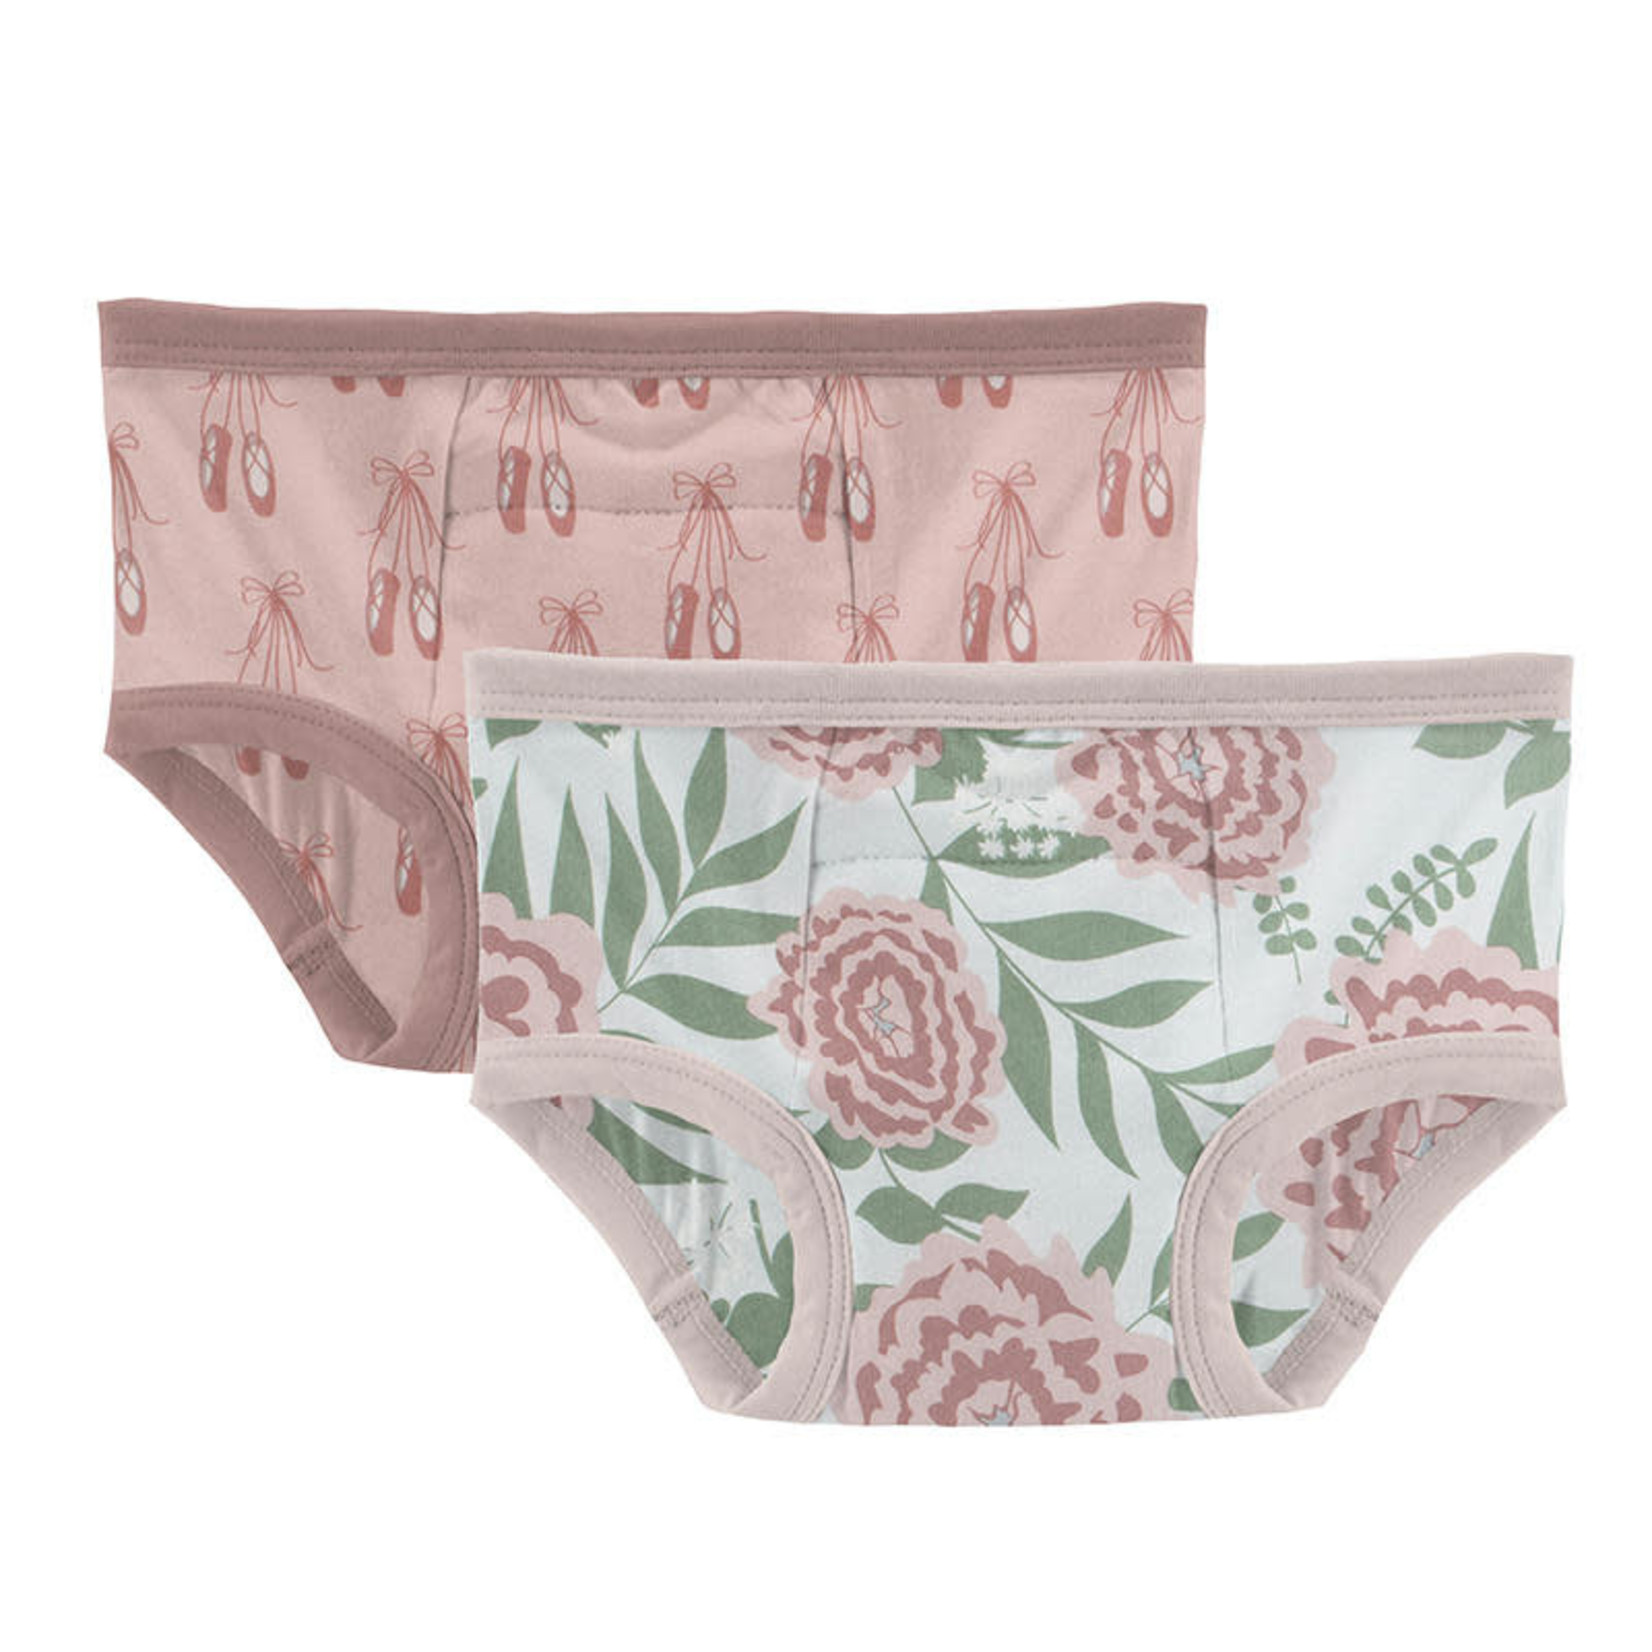 Kickee Pants Girl's Underwear Set of 3: Baby Rose Mermaid, Natural